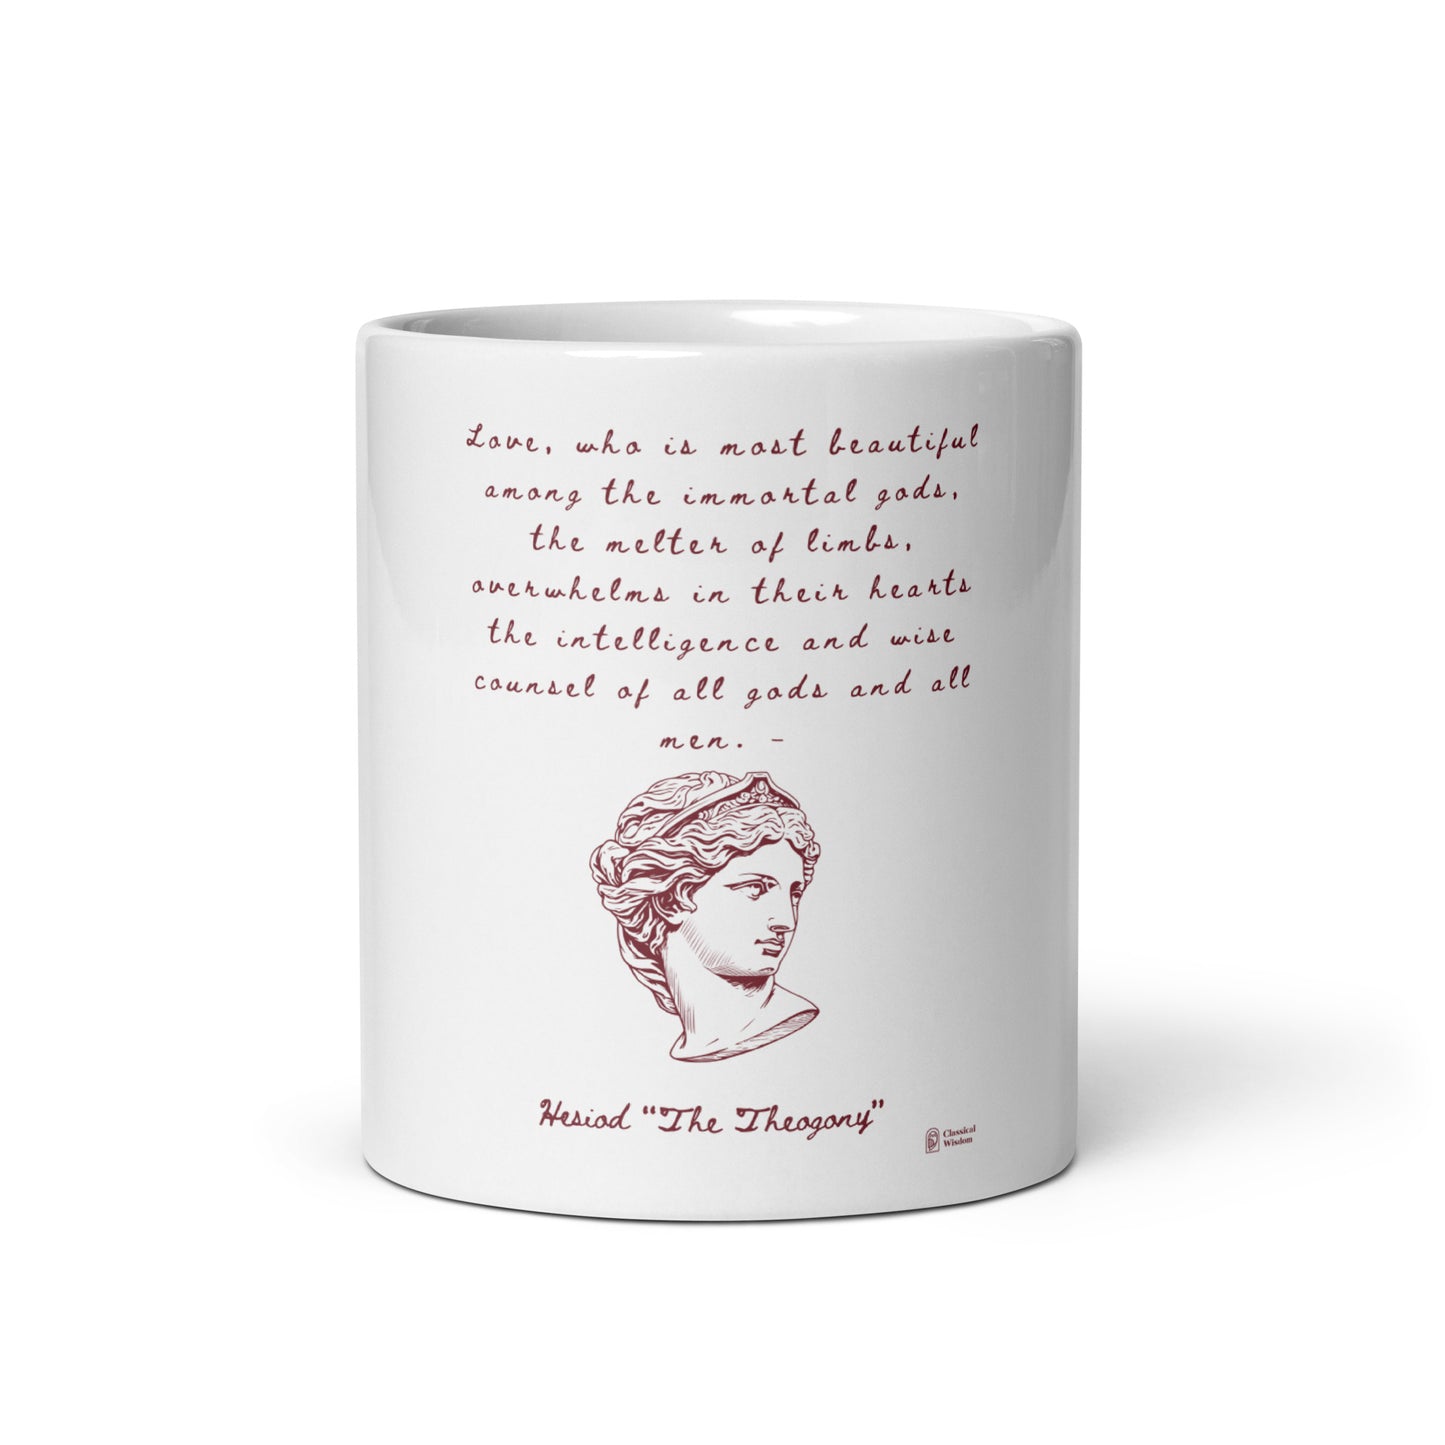 White glossy mug - Hesiod Quote